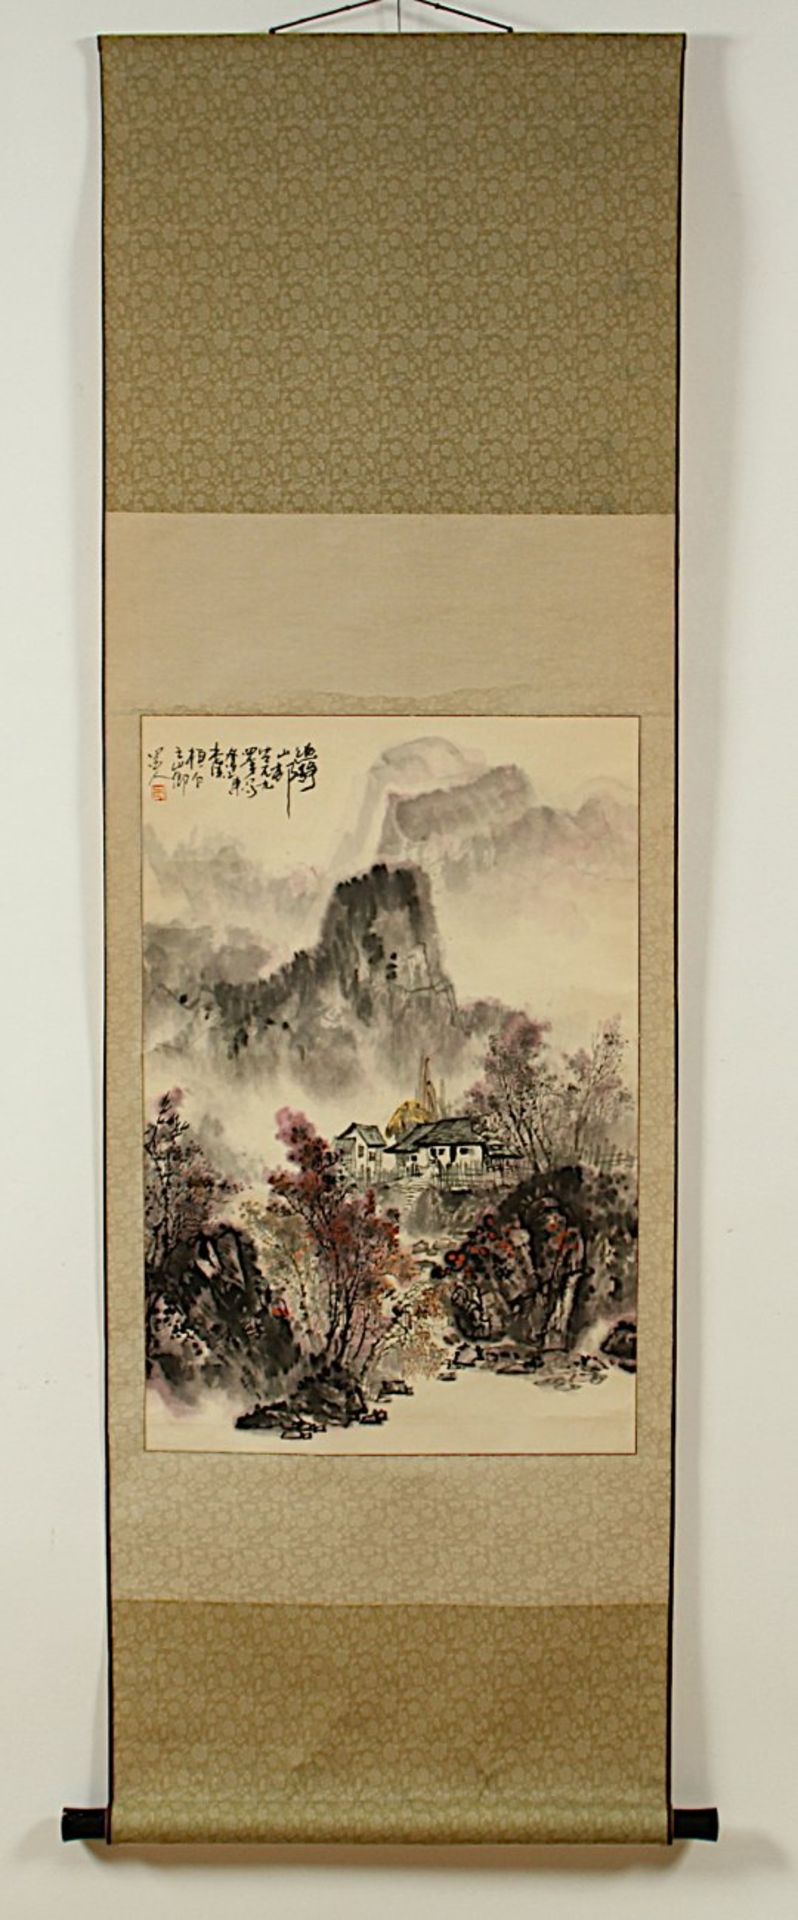 ROLLBILD, Tusche und Farben auf Papier, Landschaft, Aufschrift und Siegel, 68 x 45, montiert, CHINA, - Bild 2 aus 4